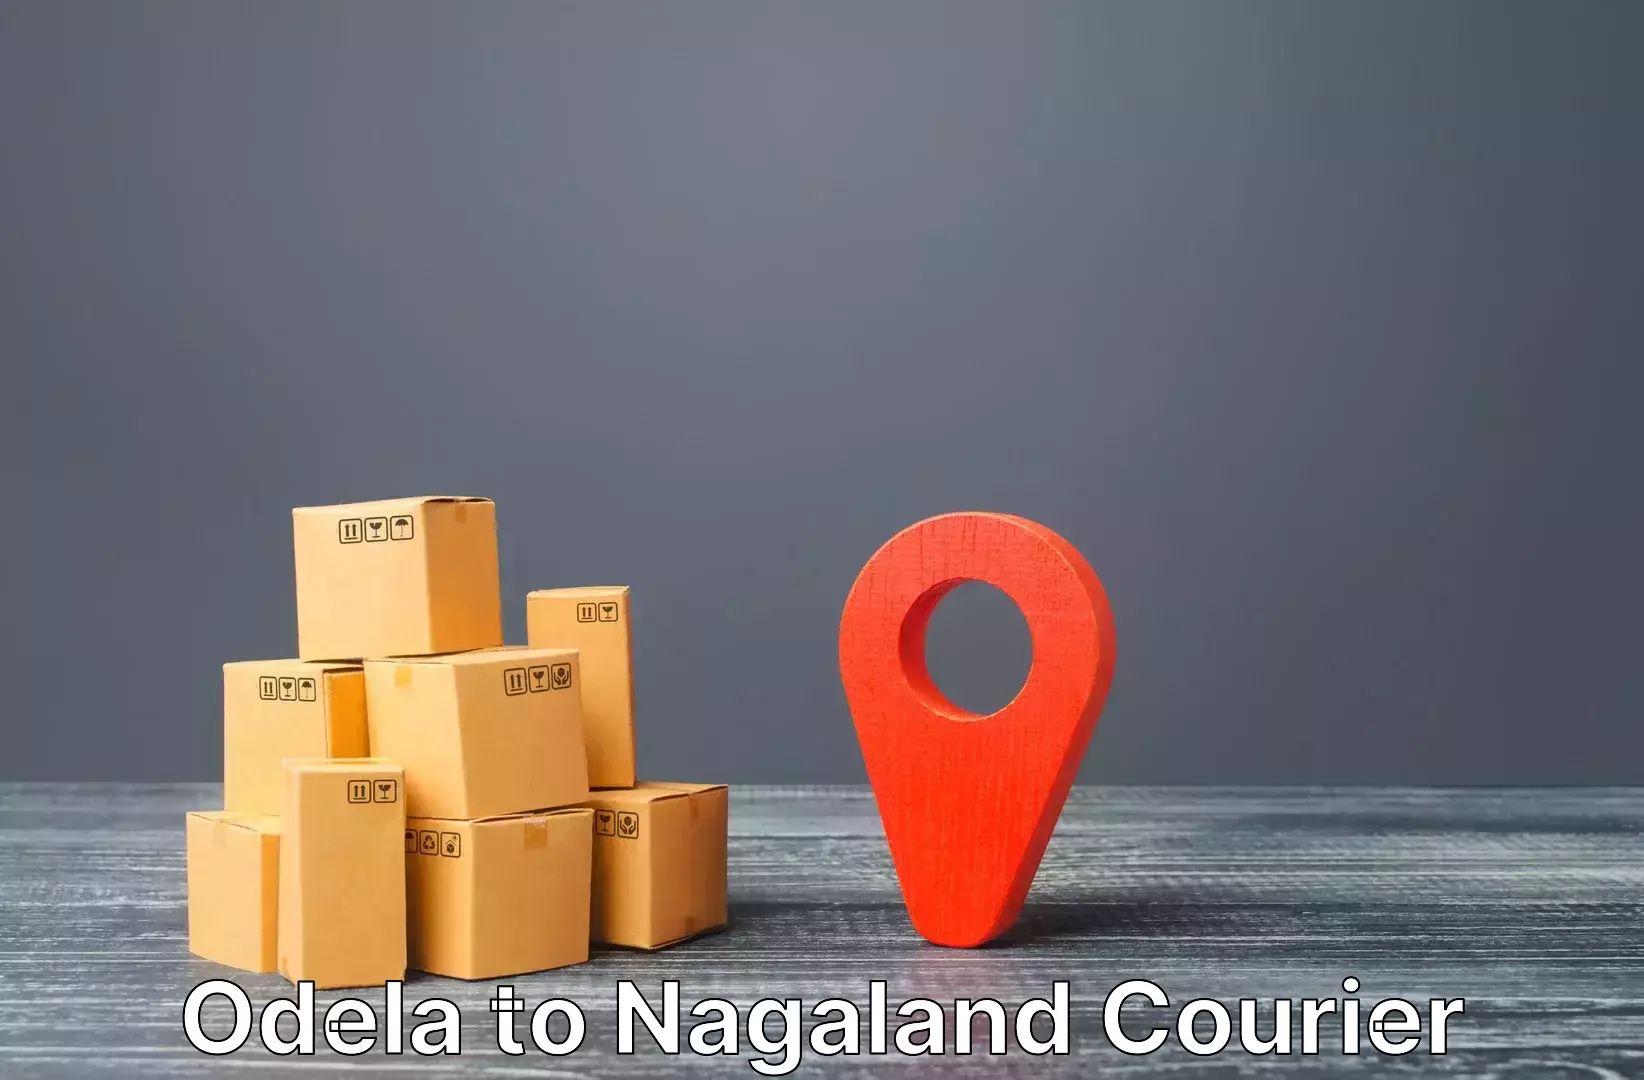 Automated luggage transport Odela to Nagaland